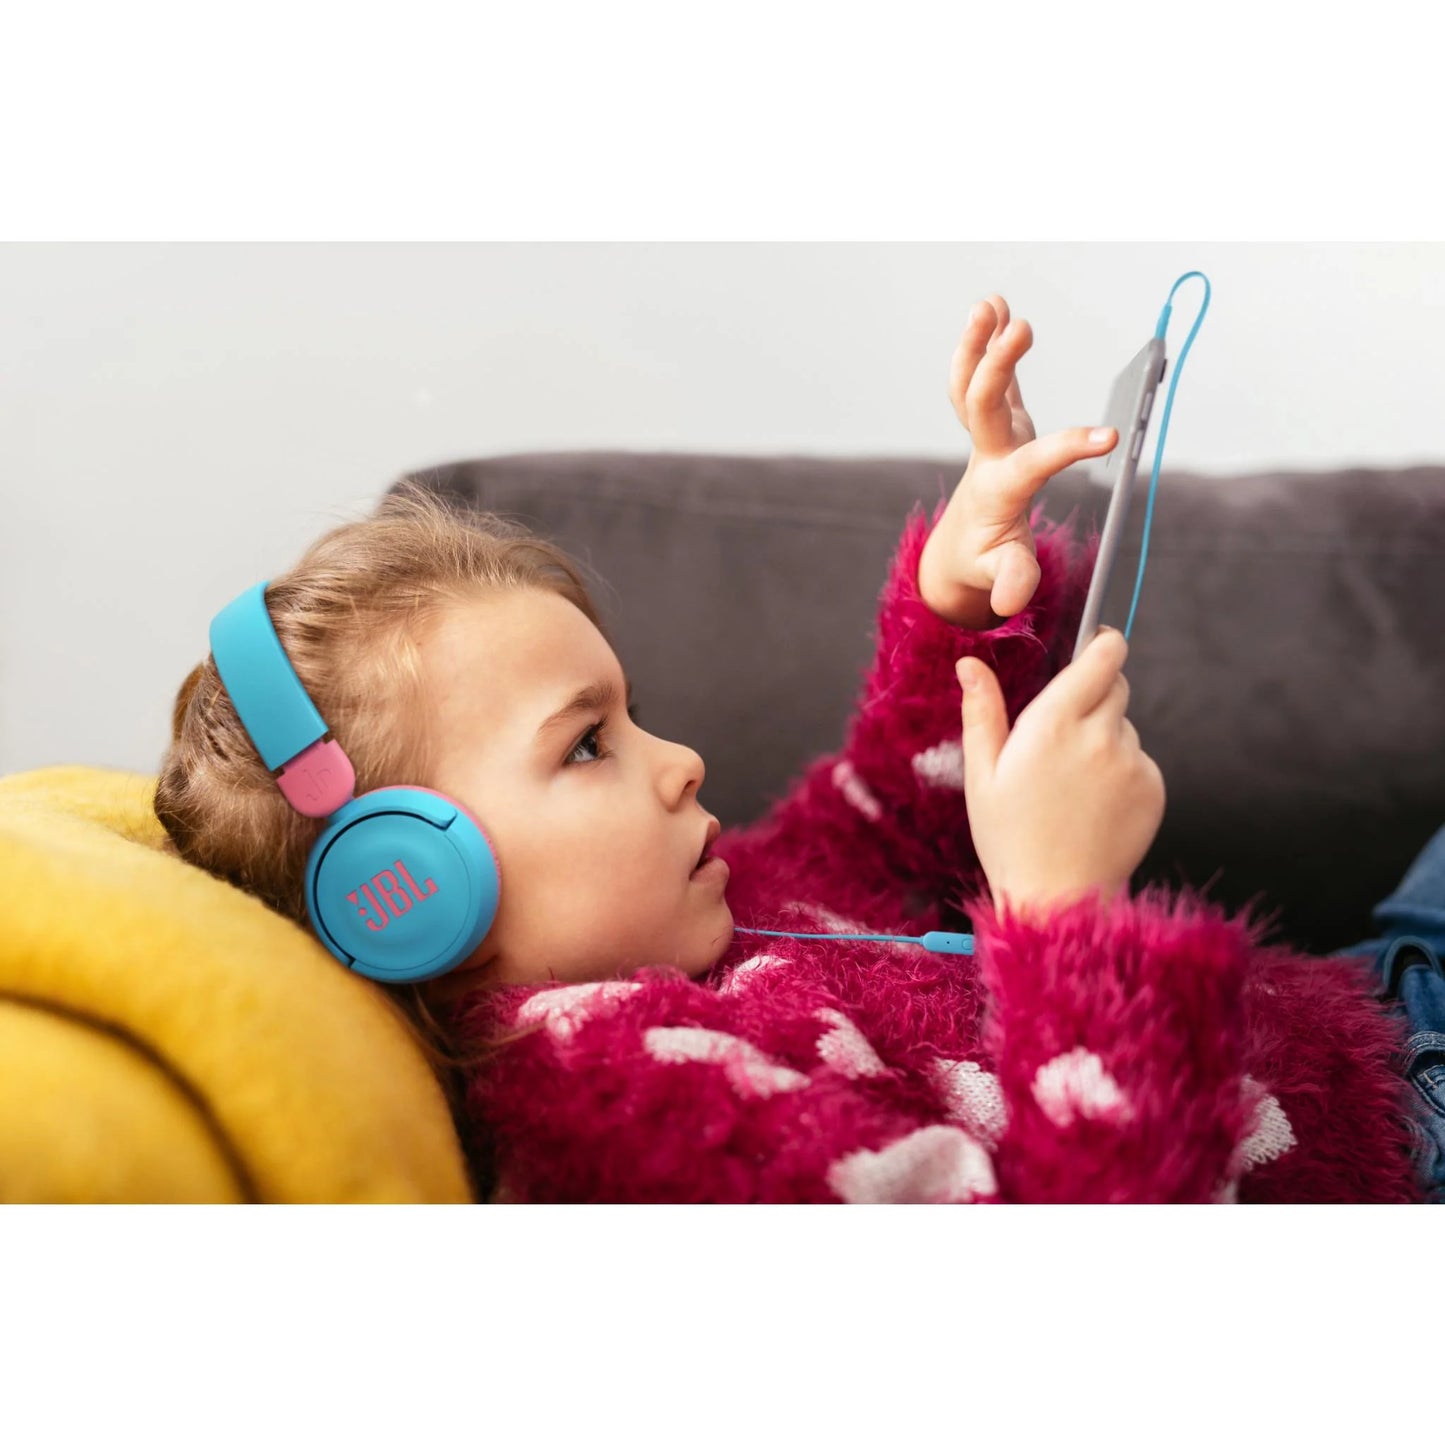 JBL Jr310 Kids On-Ear Headphones (Blue)